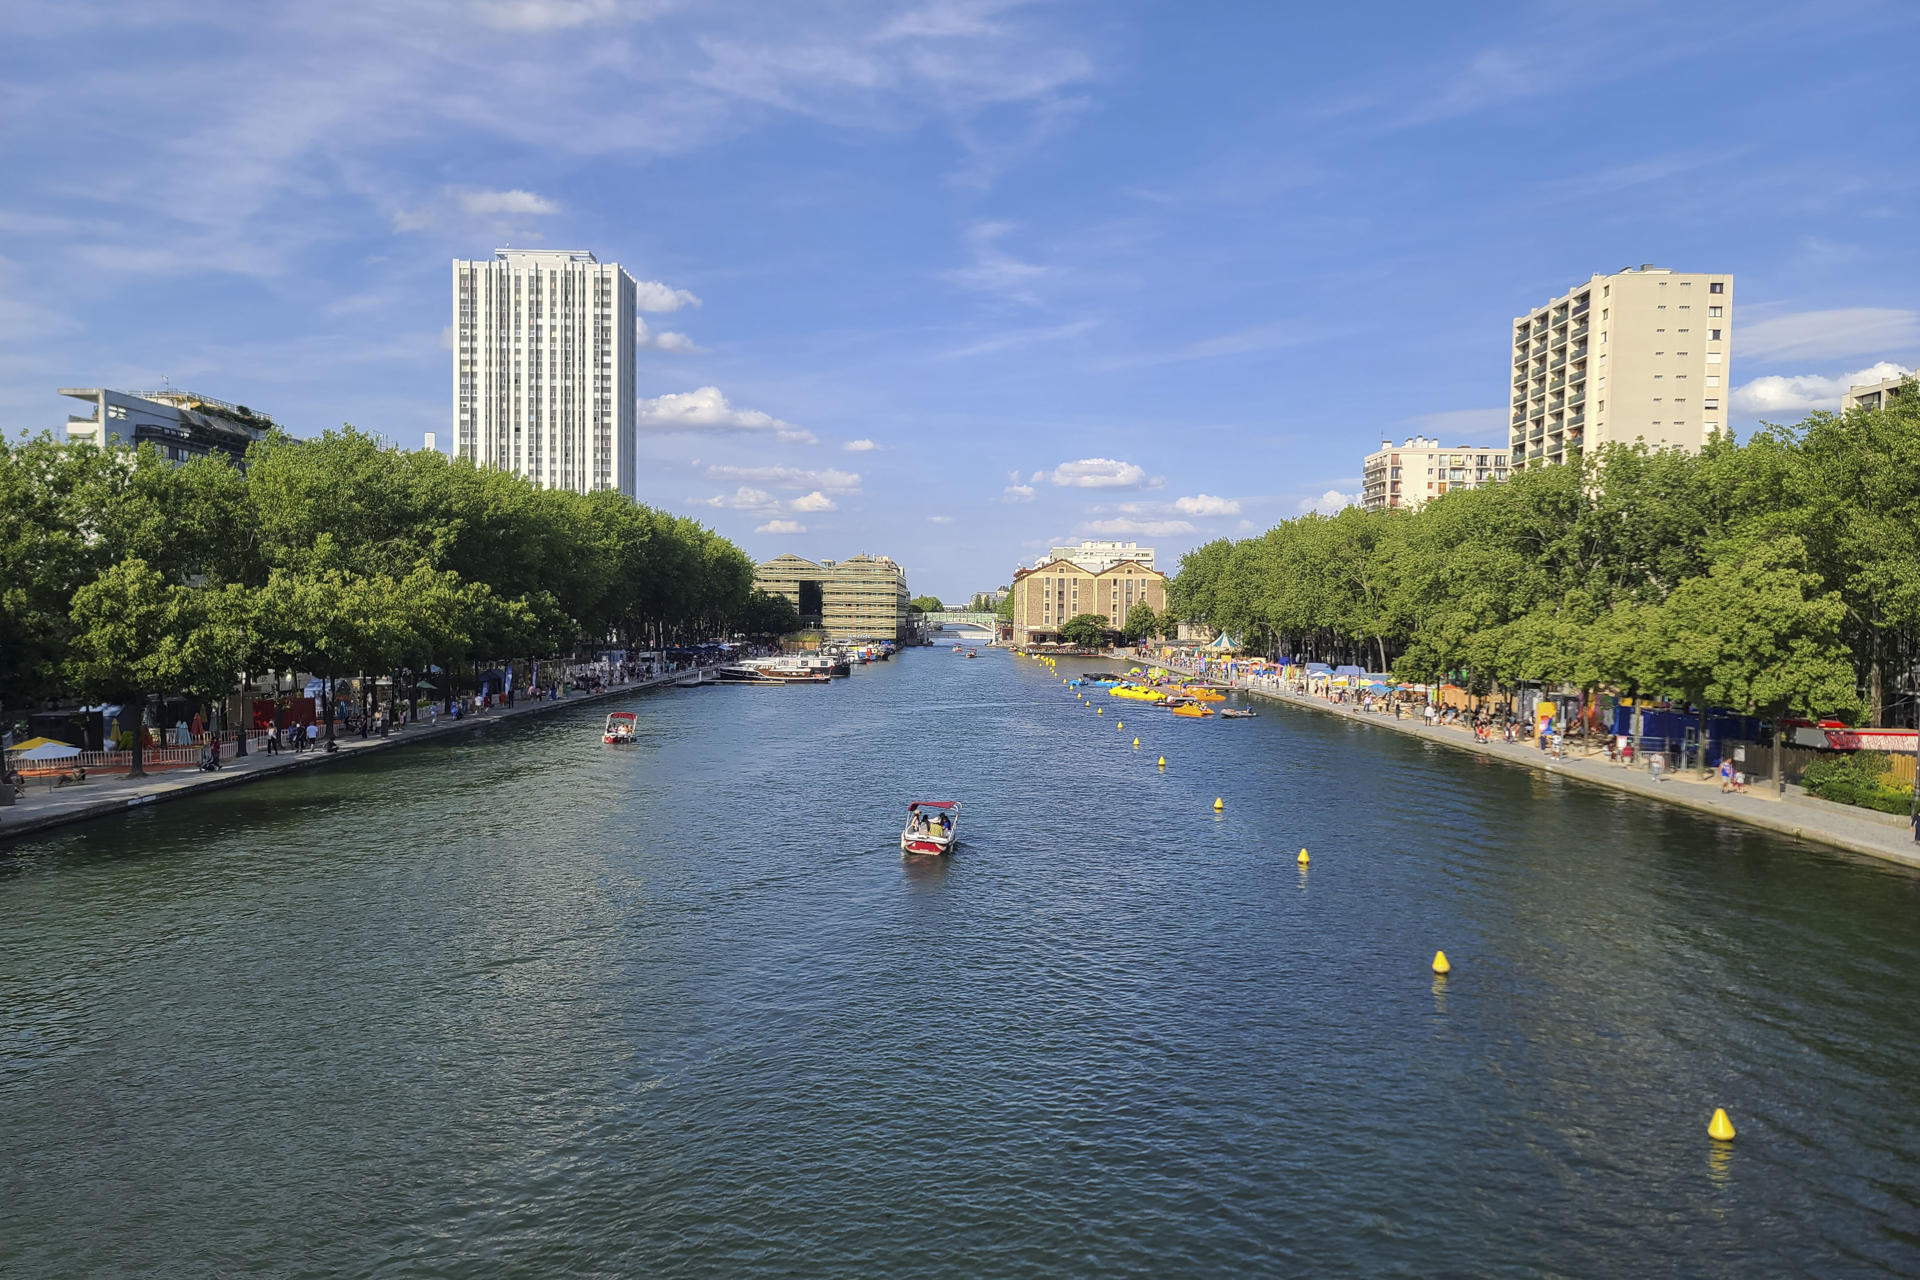 Nuevo revés a pruebas de natación en el Sena para París 2024 por calidad del agua